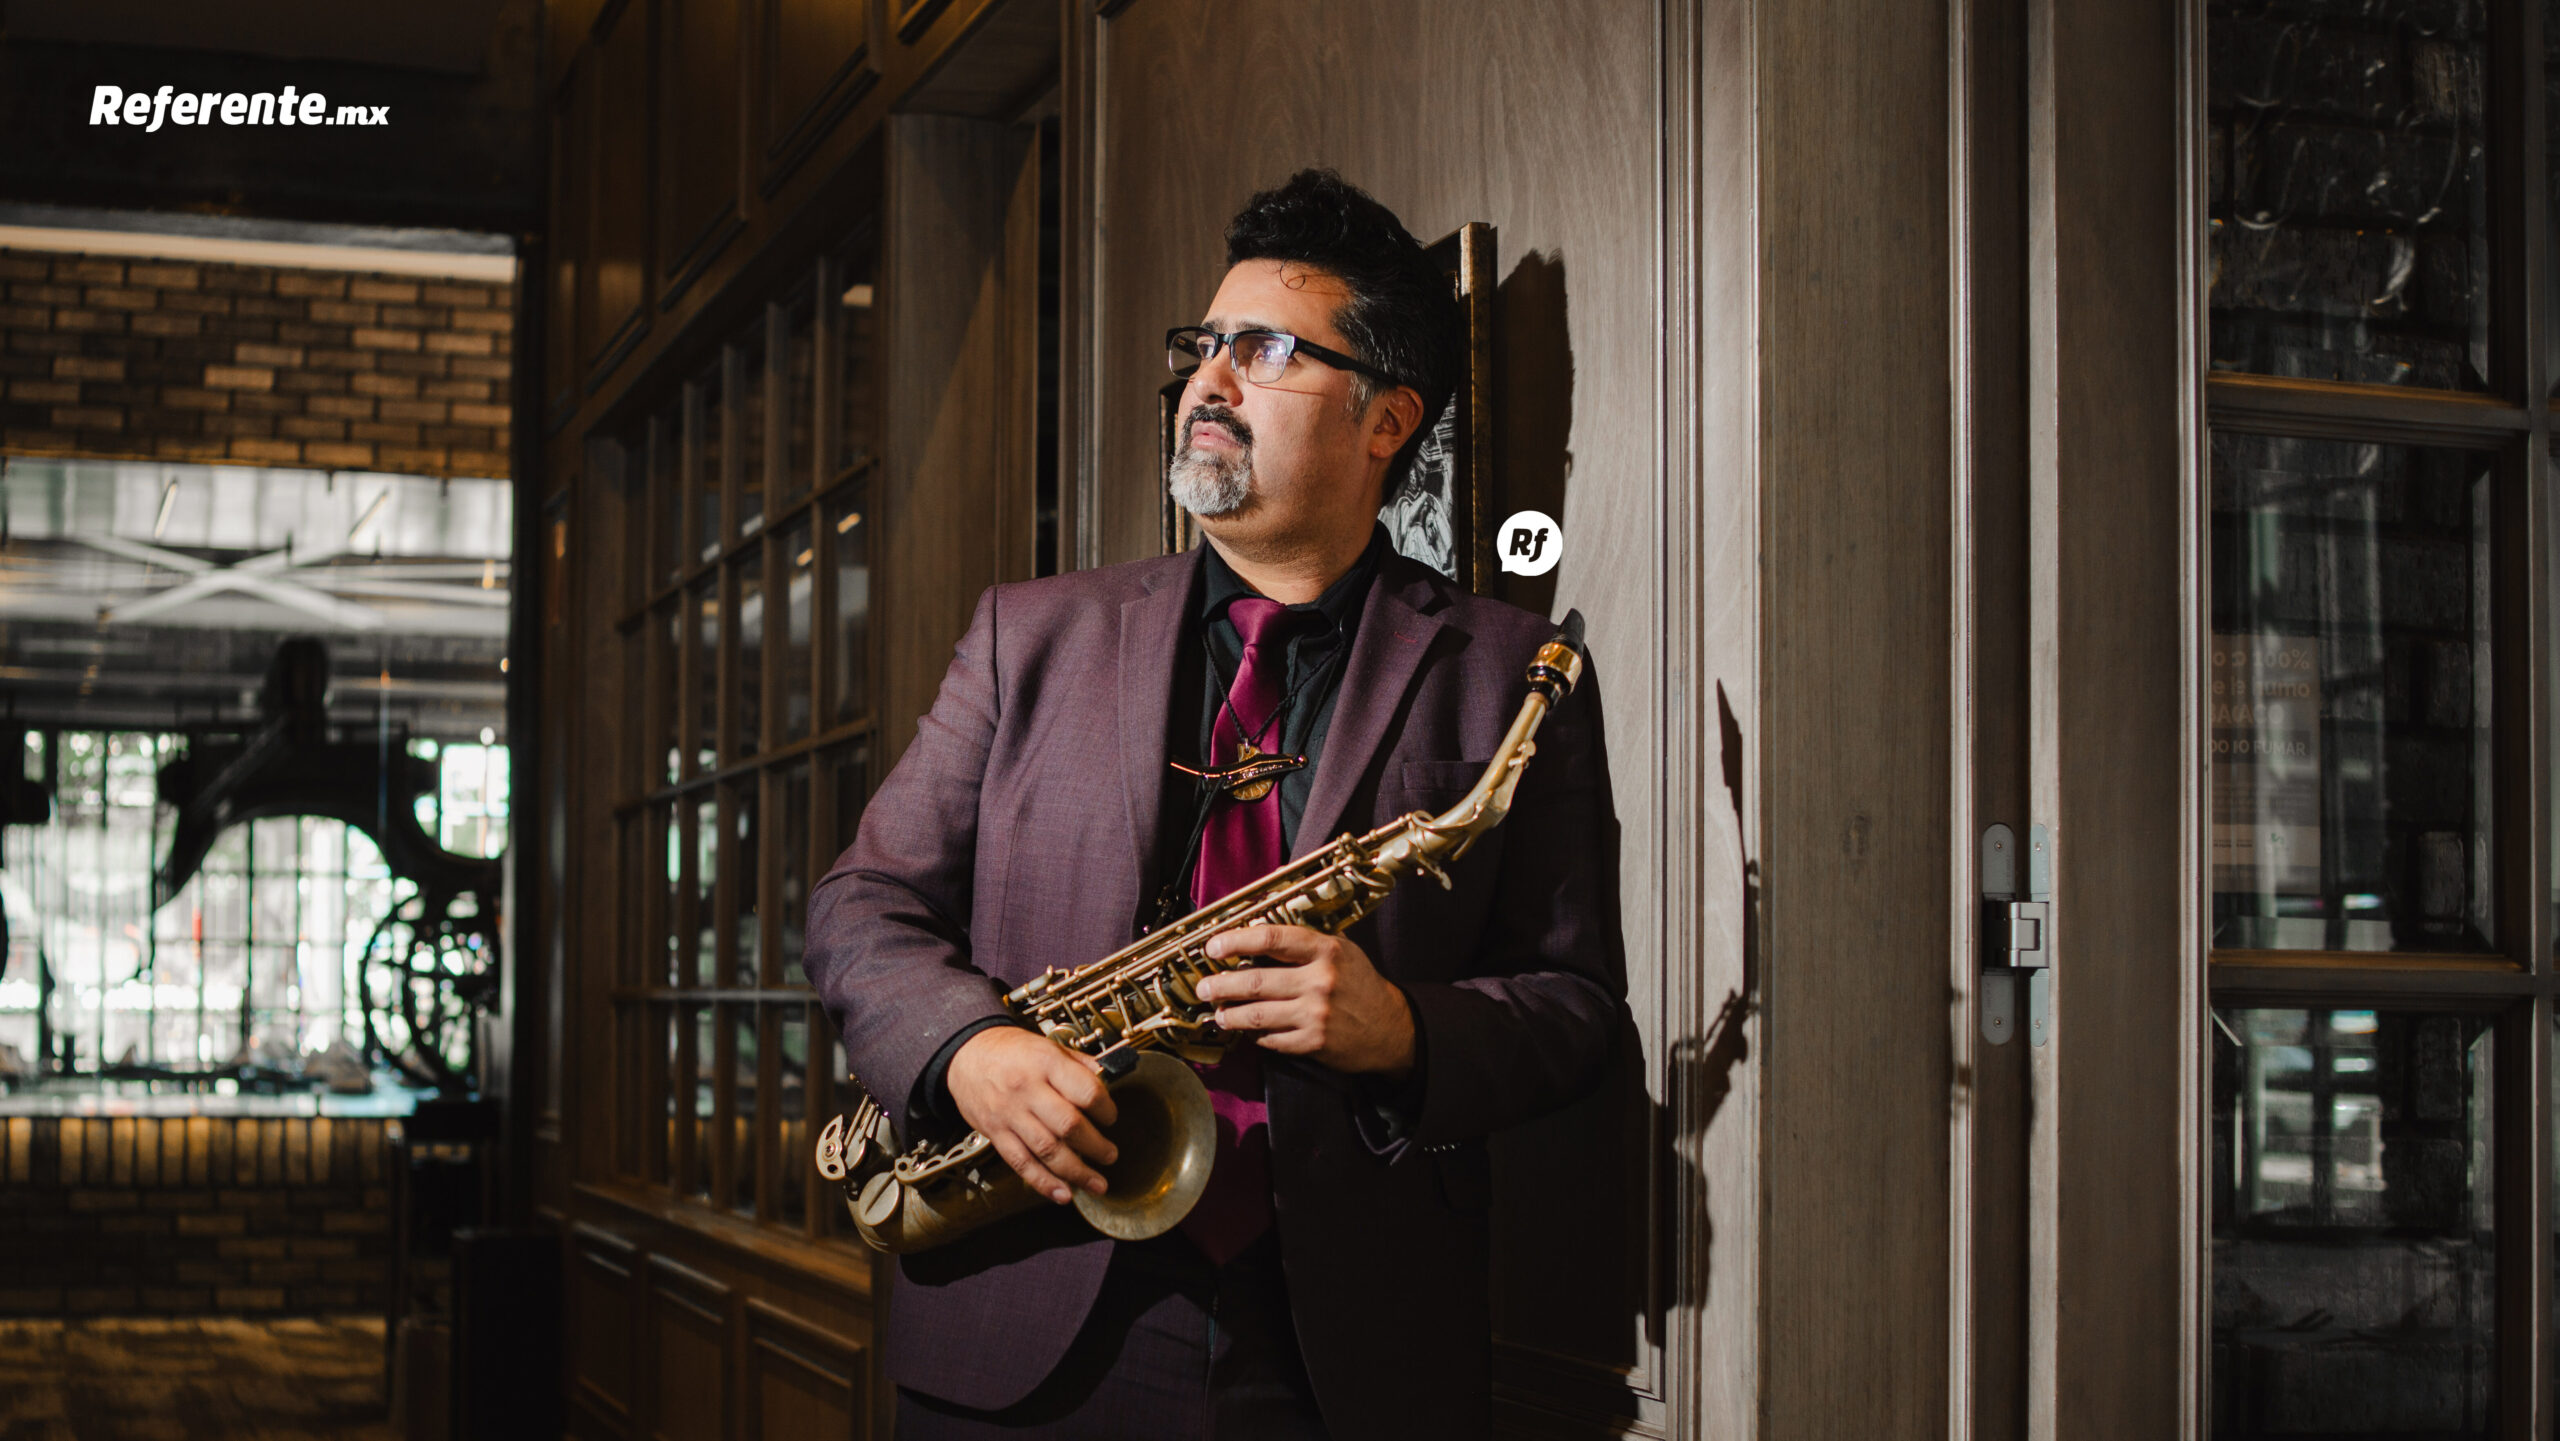 El saxofonista de Jazzteño Band, en entrevista para Referente.mx en La Calesa, D1. | FOTO: Ruary Vargas, Referente.mx